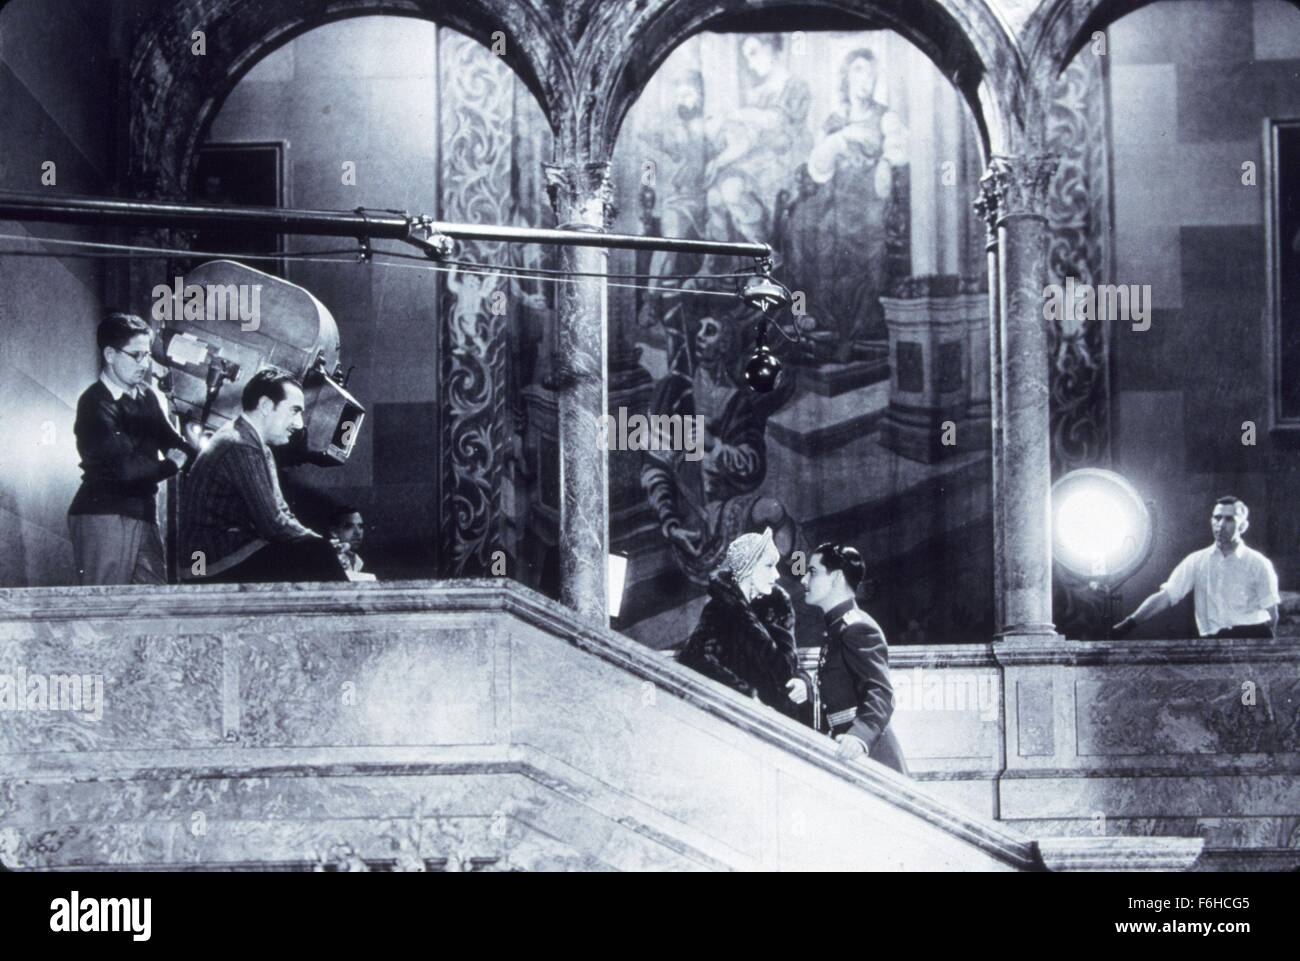 1932, le titre du film : Mata Hari, Directeur : GEORGE FITZMAURICE, Studio : MGM, Photo : DERRIÈRE LES COULISSES, GEORGE FITZMAURICE, GRETA GARBO, CAMÉRA, Film, Film d'équipage. (Crédit Image : SNAP) Banque D'Images